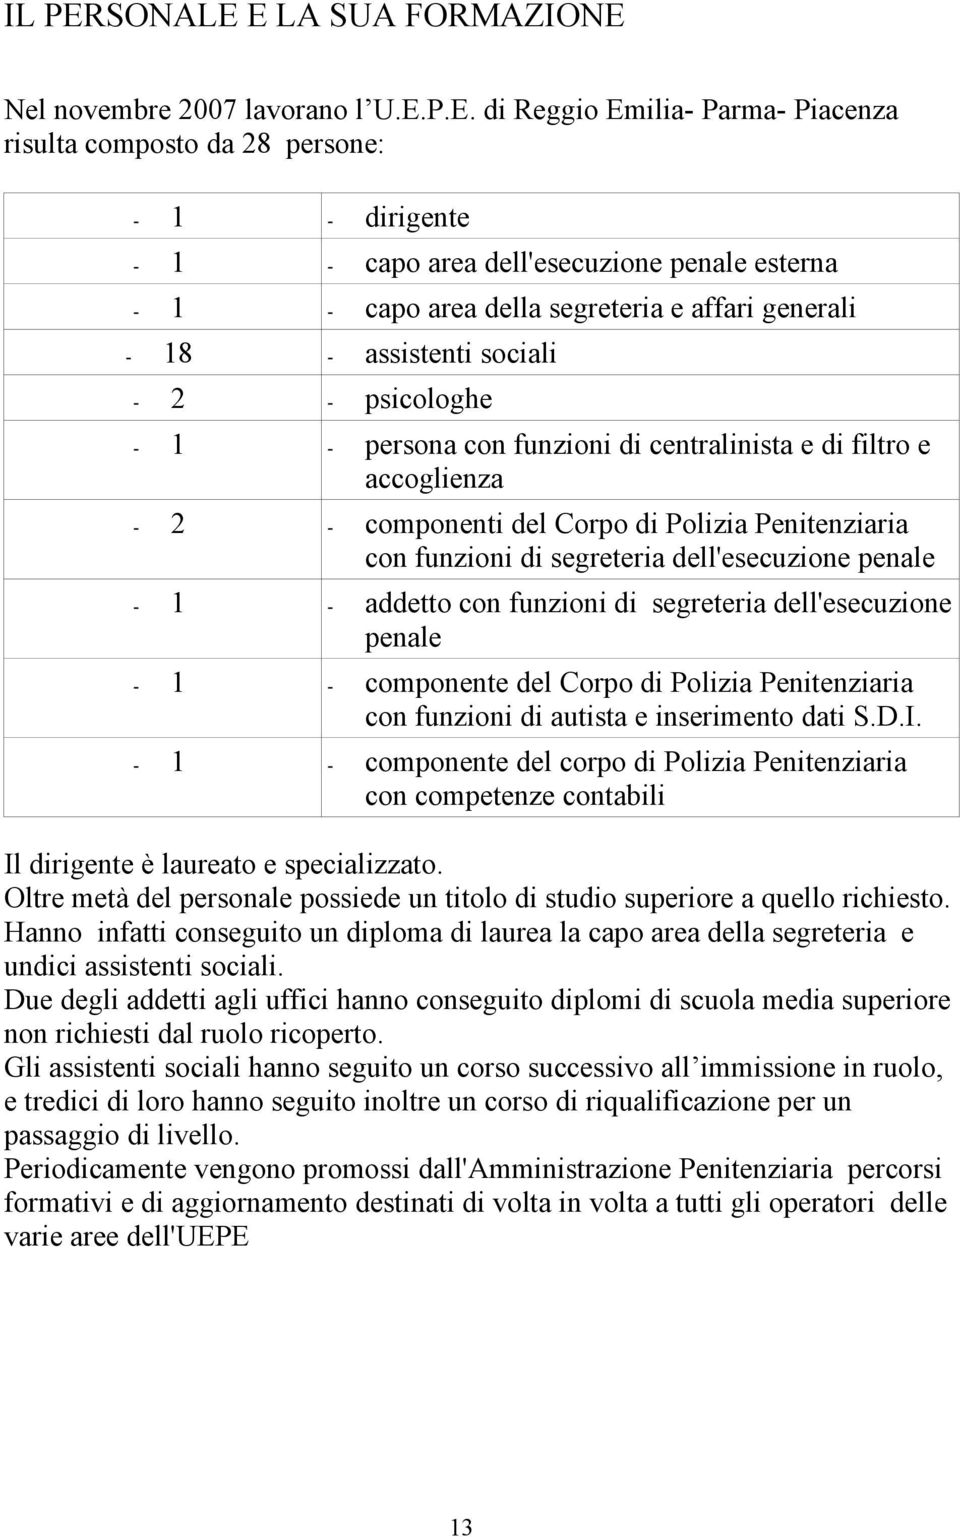 E LA SUA FORMAZIONE Nel novembre 2007 lavorano l U.E.P.E. di Reggio Emilia- Parma- Piacenza risulta composto da 28 persone: - 1 - dirigente - 1 - capo area dell'esecuzione penale esterna - 1 - capo